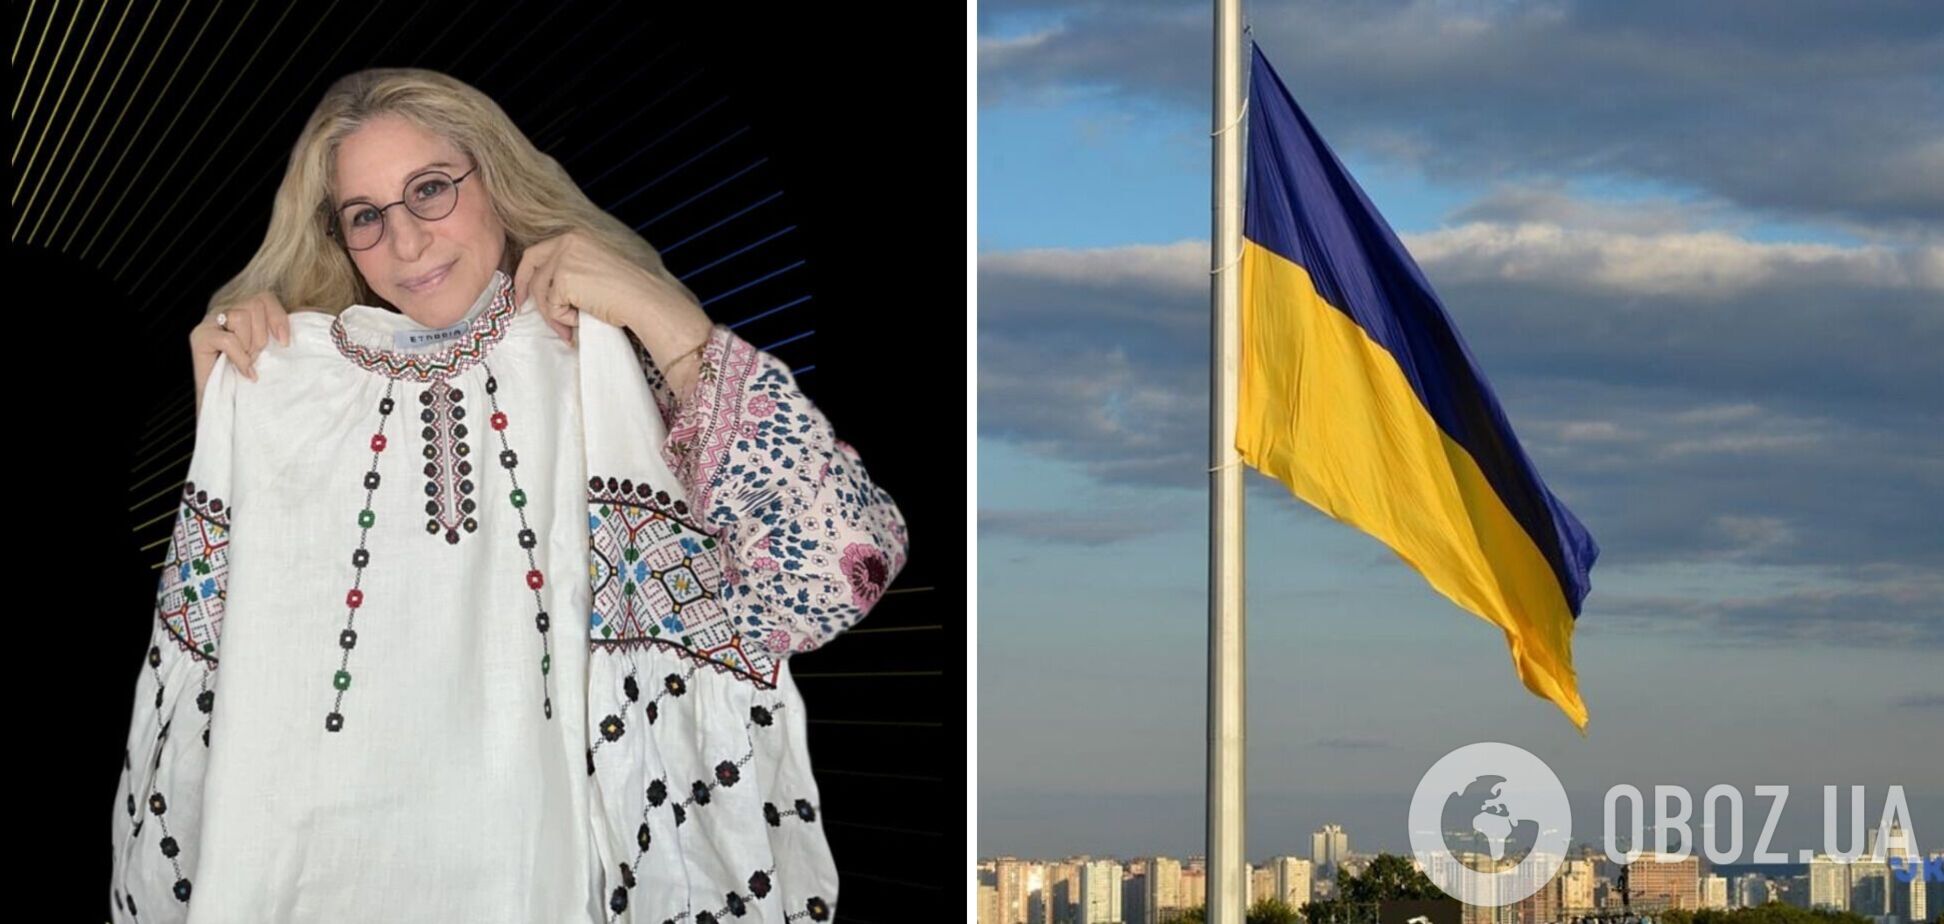 Барбра Стрейзанд похвасталась вышиванкой с узорами, присущими Тернопольщине, и рассказала о родных-украинцах